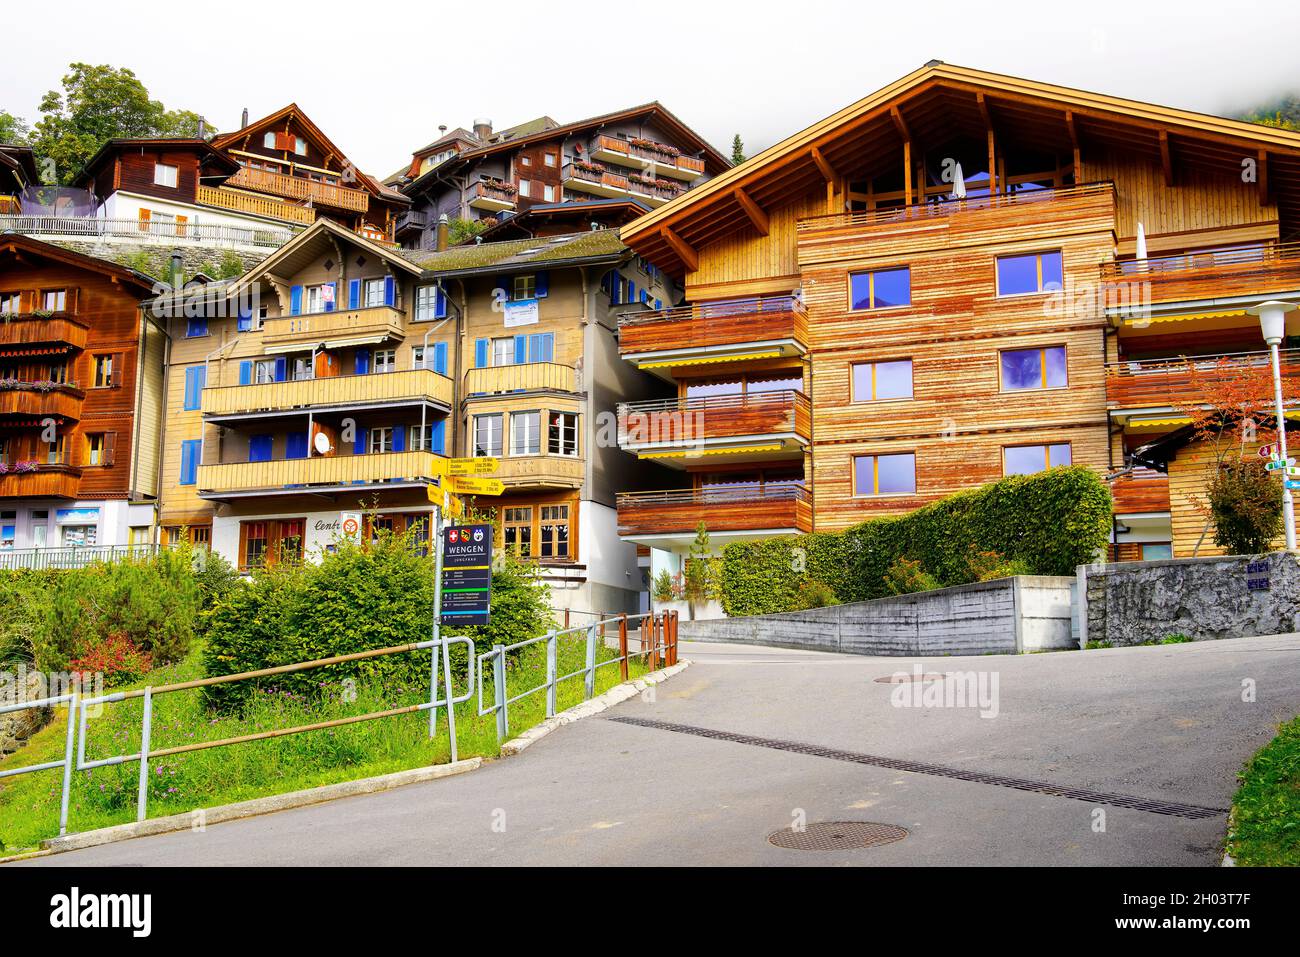 Blick auf Holzchalets und Belle-époque-Hotels in Wengen. Kanton Bern, Schweiz. Wengen ist ein Schweizer Alpendorf im Berner Oberland Stockfoto